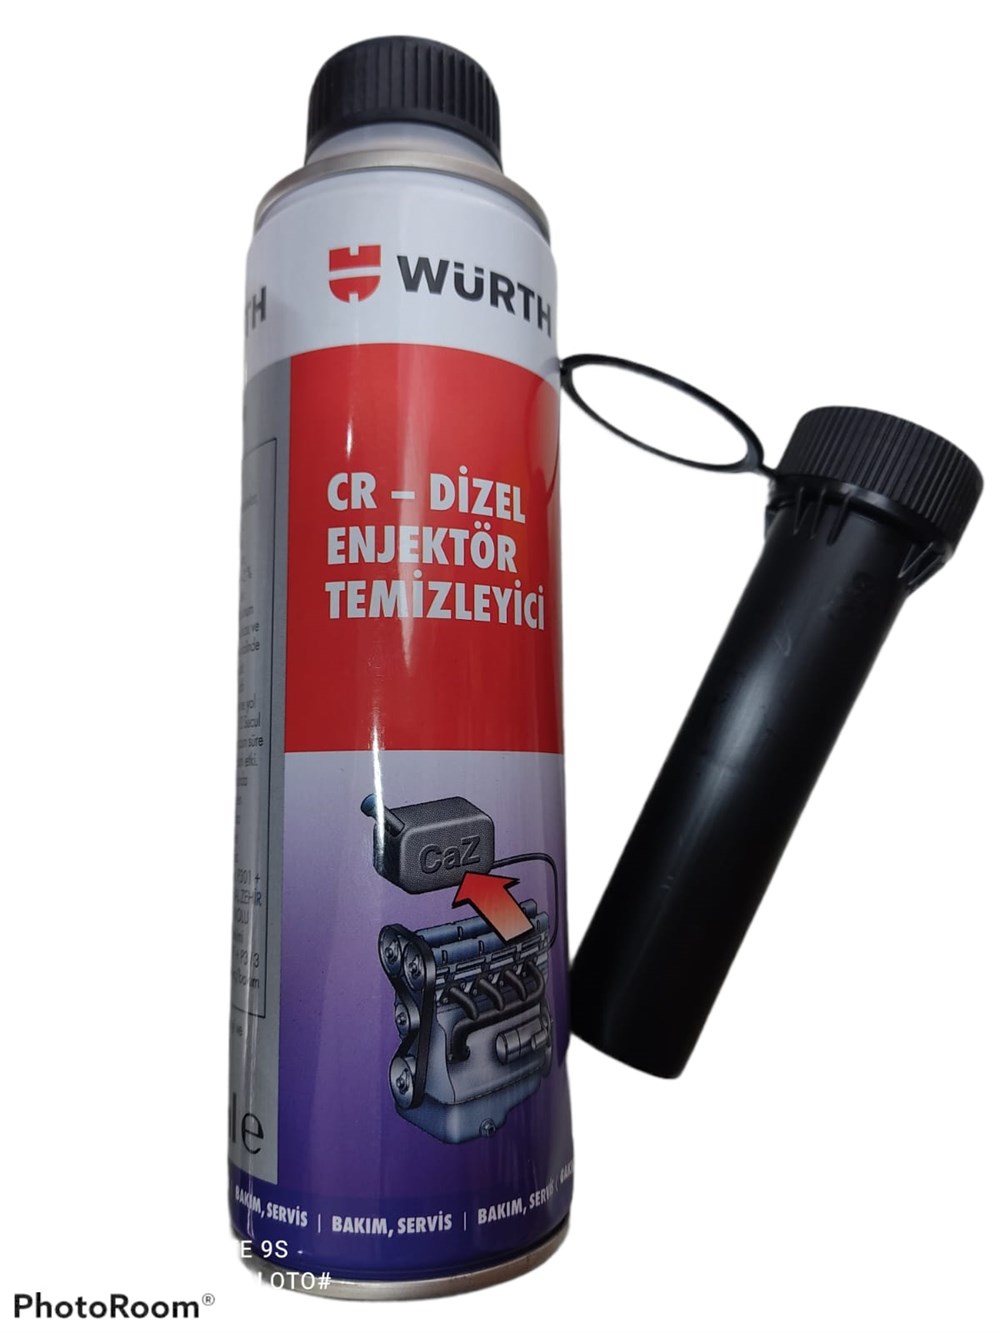 Würth Dizel Enjektör Temizleyici Yakıt Katkısı 300 ml - Yeni Üretim -  HamdiDede